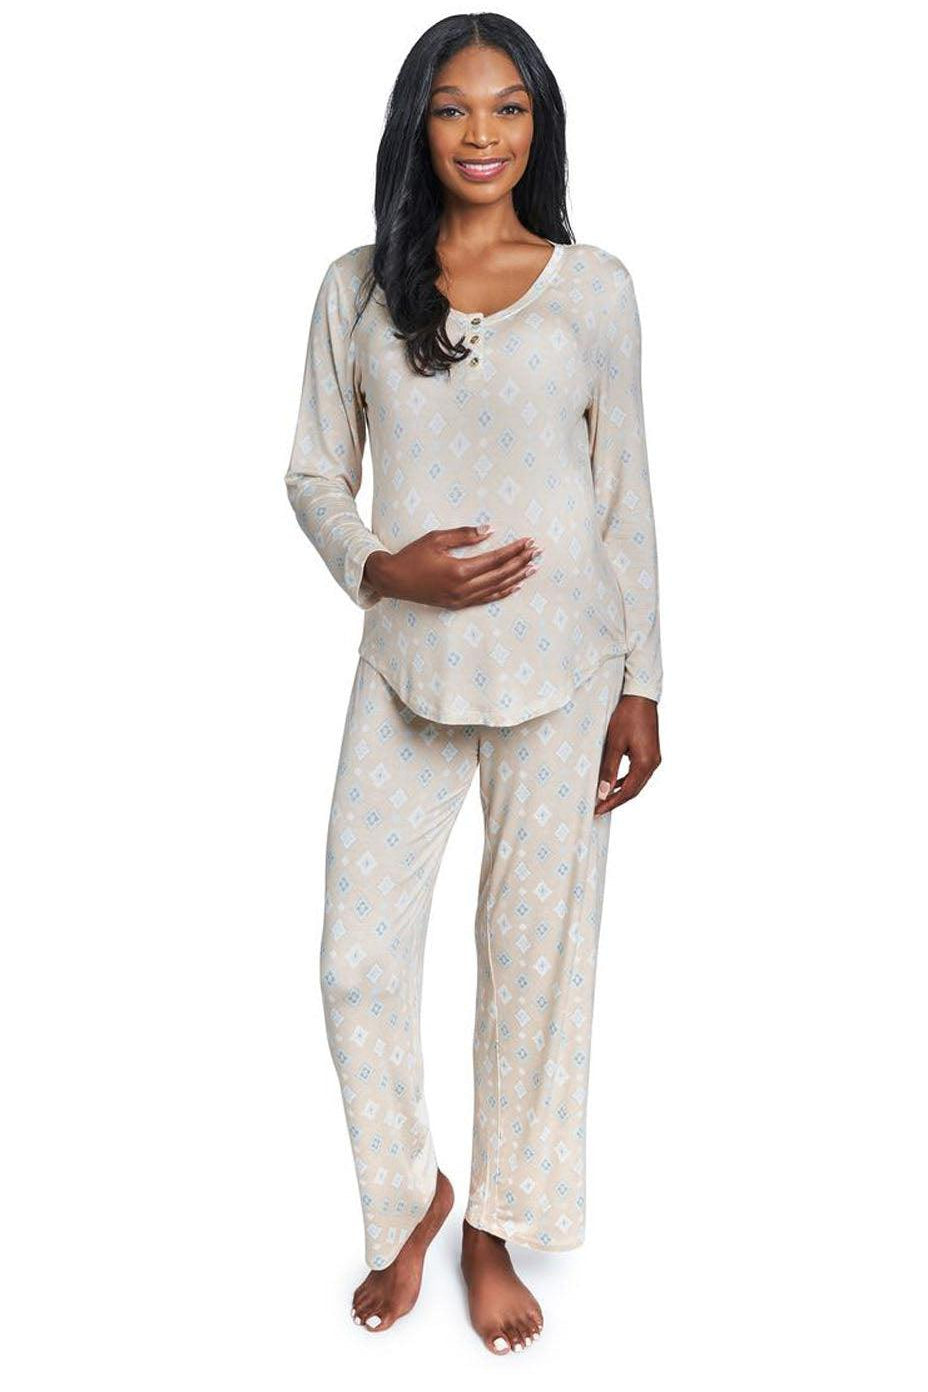 Mosaic Laina Maternity & Nursing Pajamas - Milk & Baby 